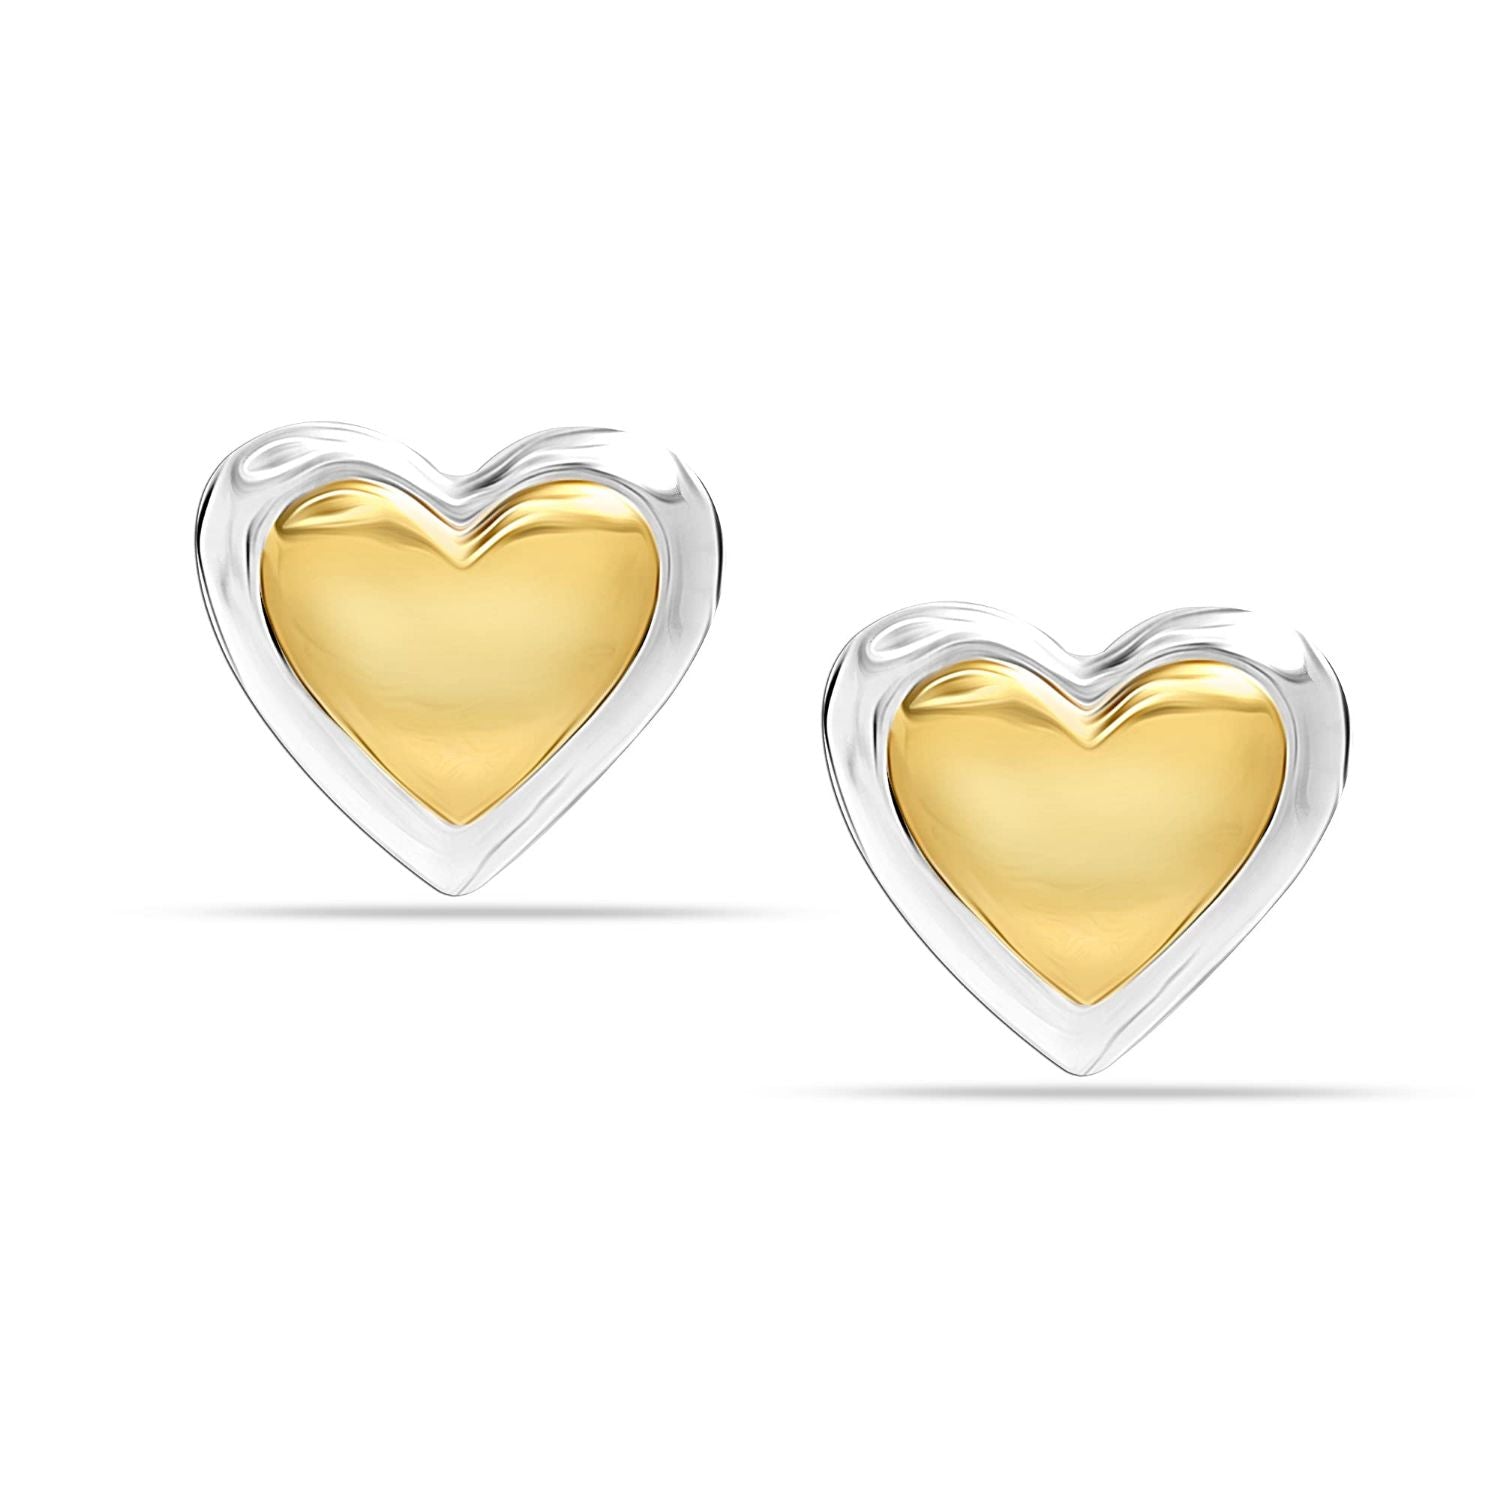 925 Sterling Silver Two-Tone Heart Shape Stud Earrings for Teen Women